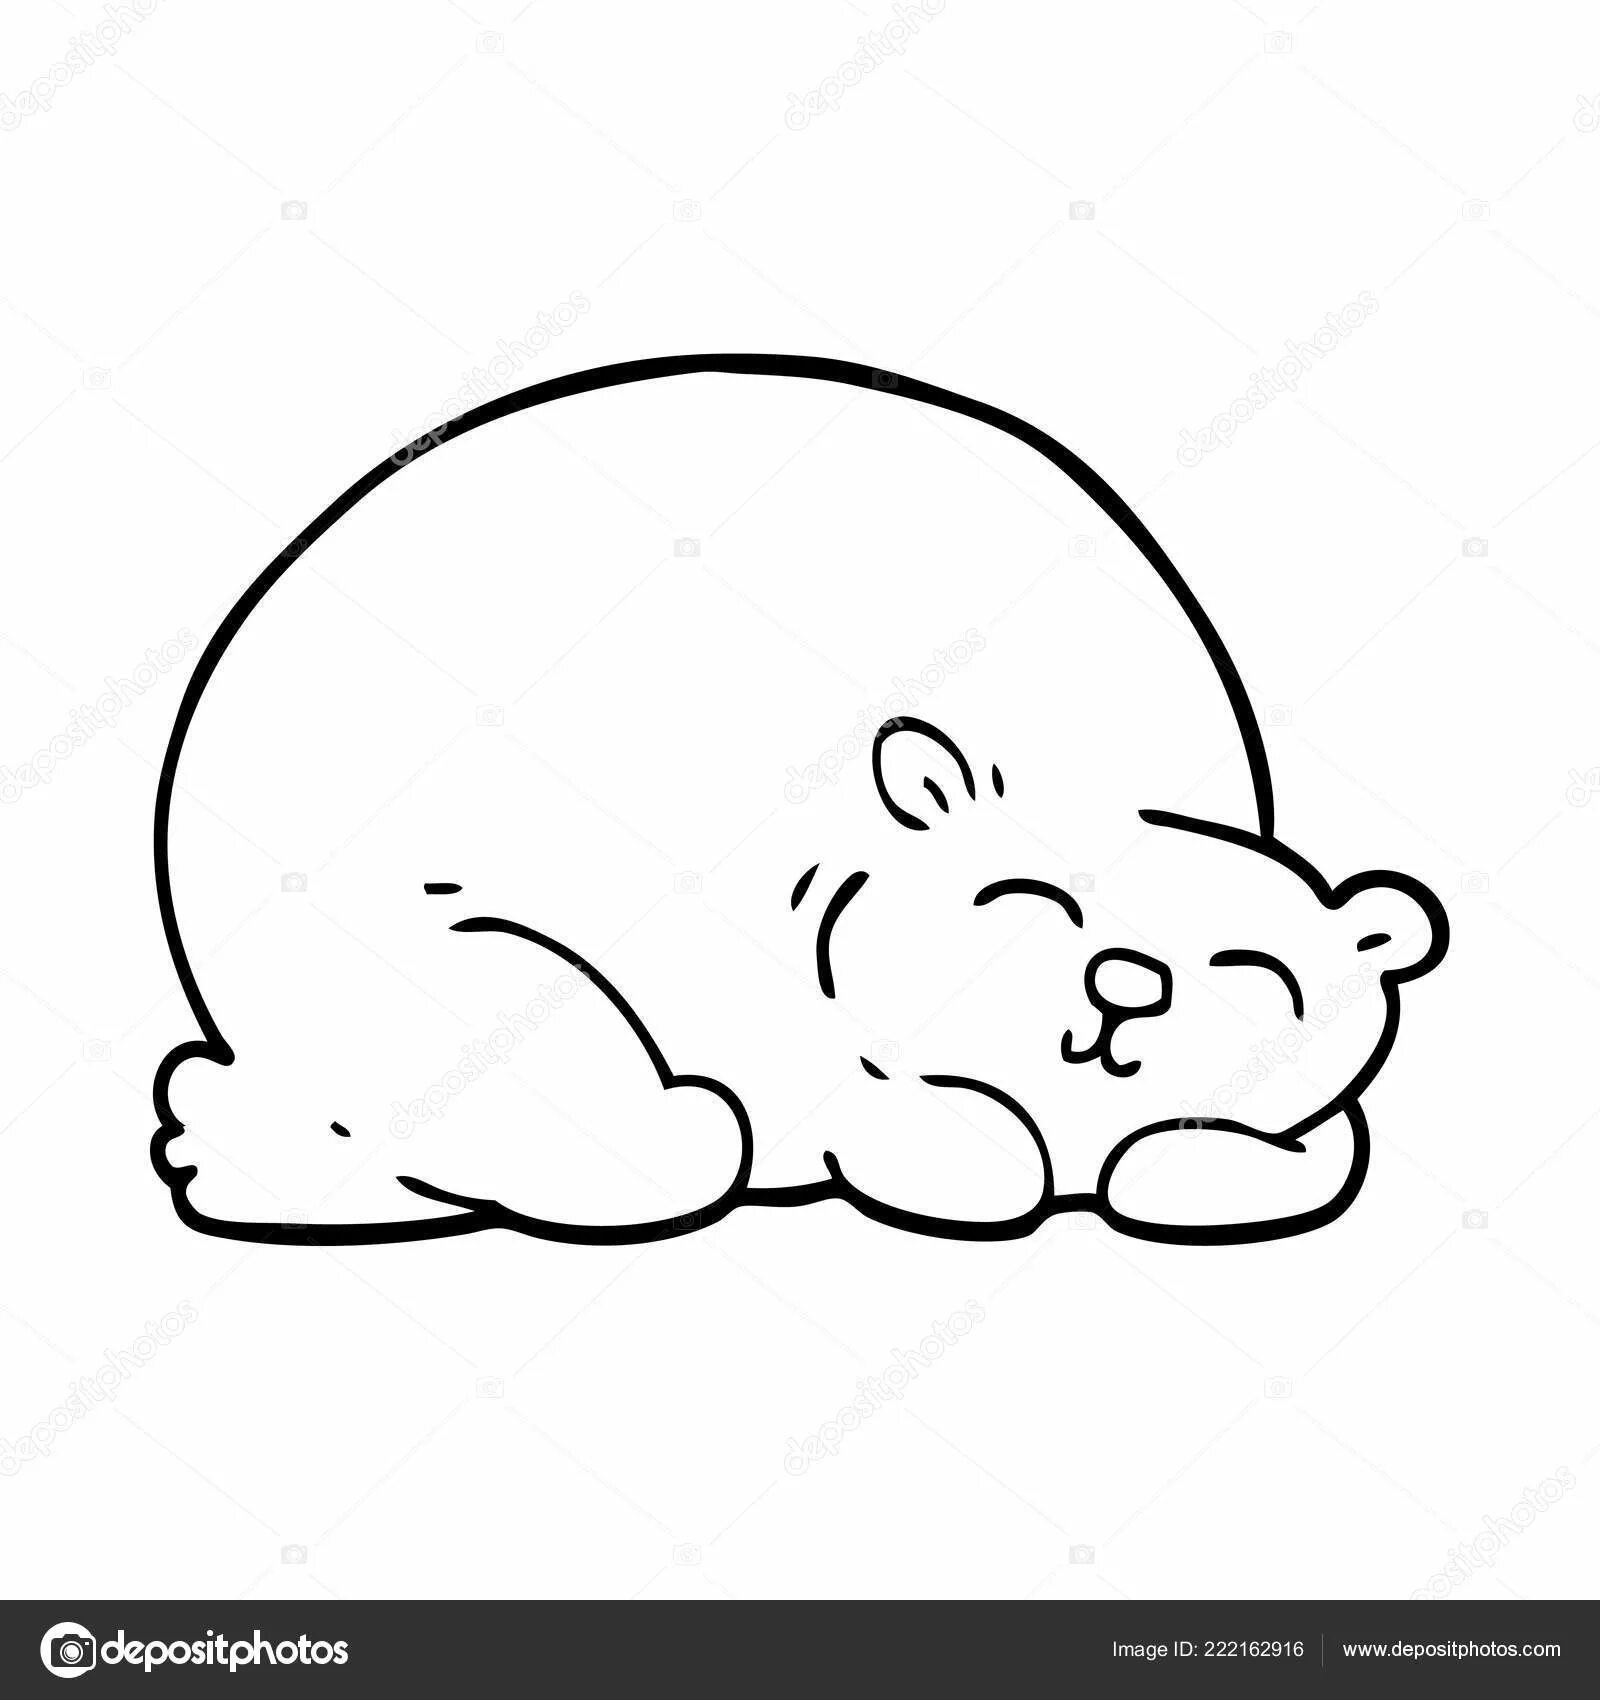 Мишка спит в берлоге #15